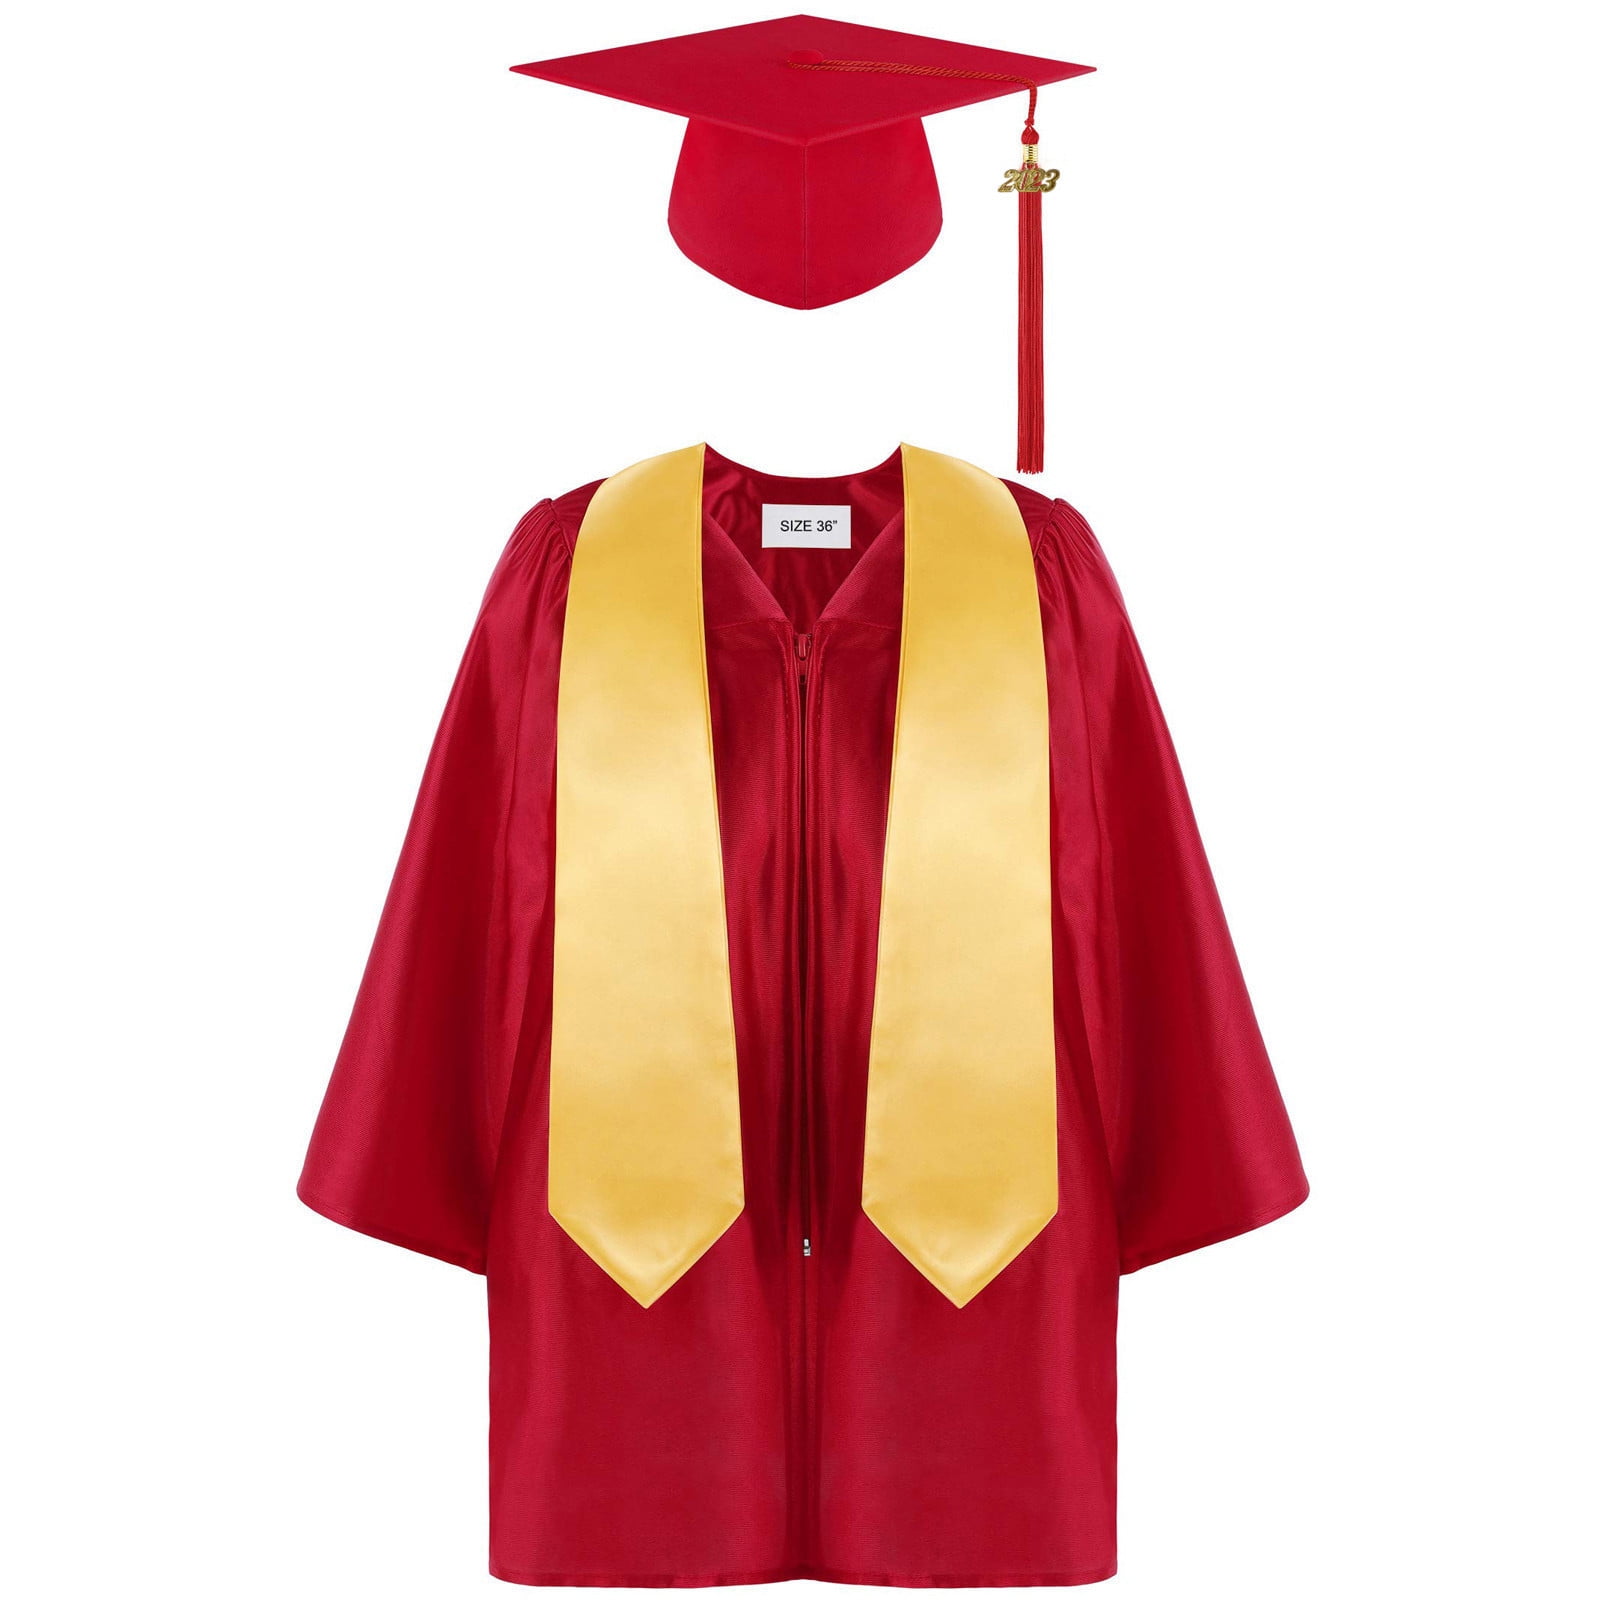 Baby Academic Hat Kids Graduation Gown Props Preschool Newborn | eBay